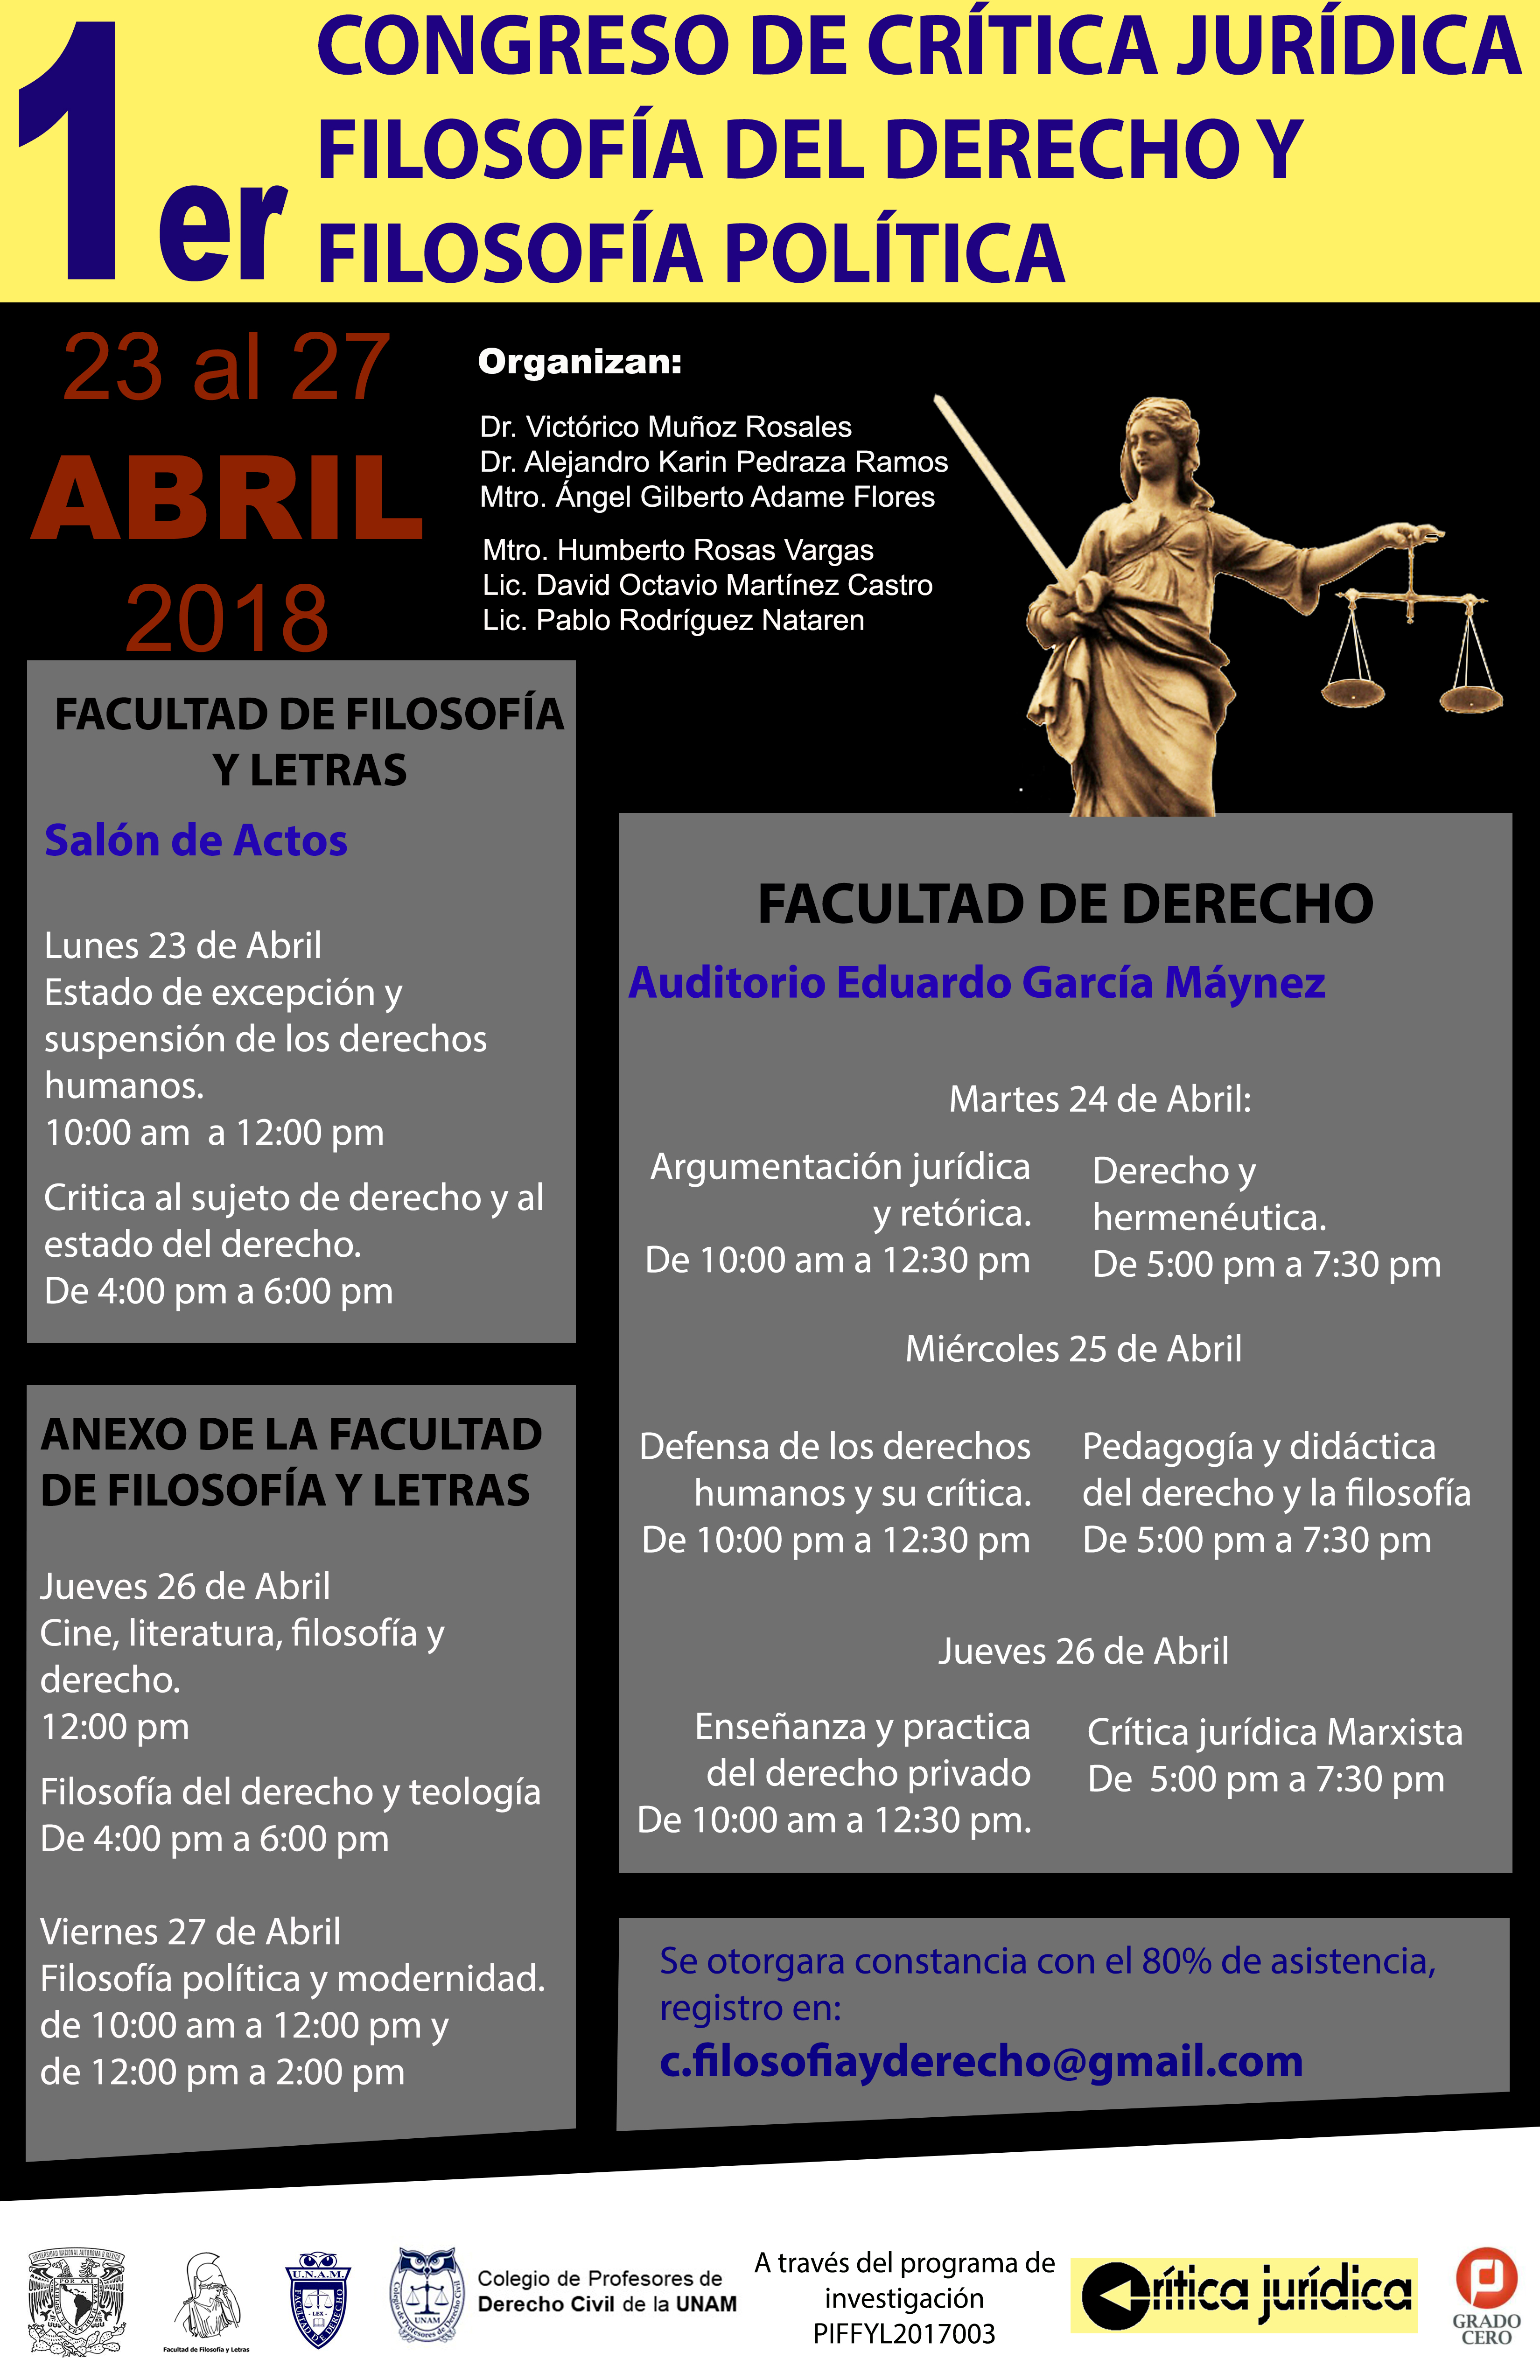 Congreso de crítica jurídica, filosofía del derecho y filosofía política